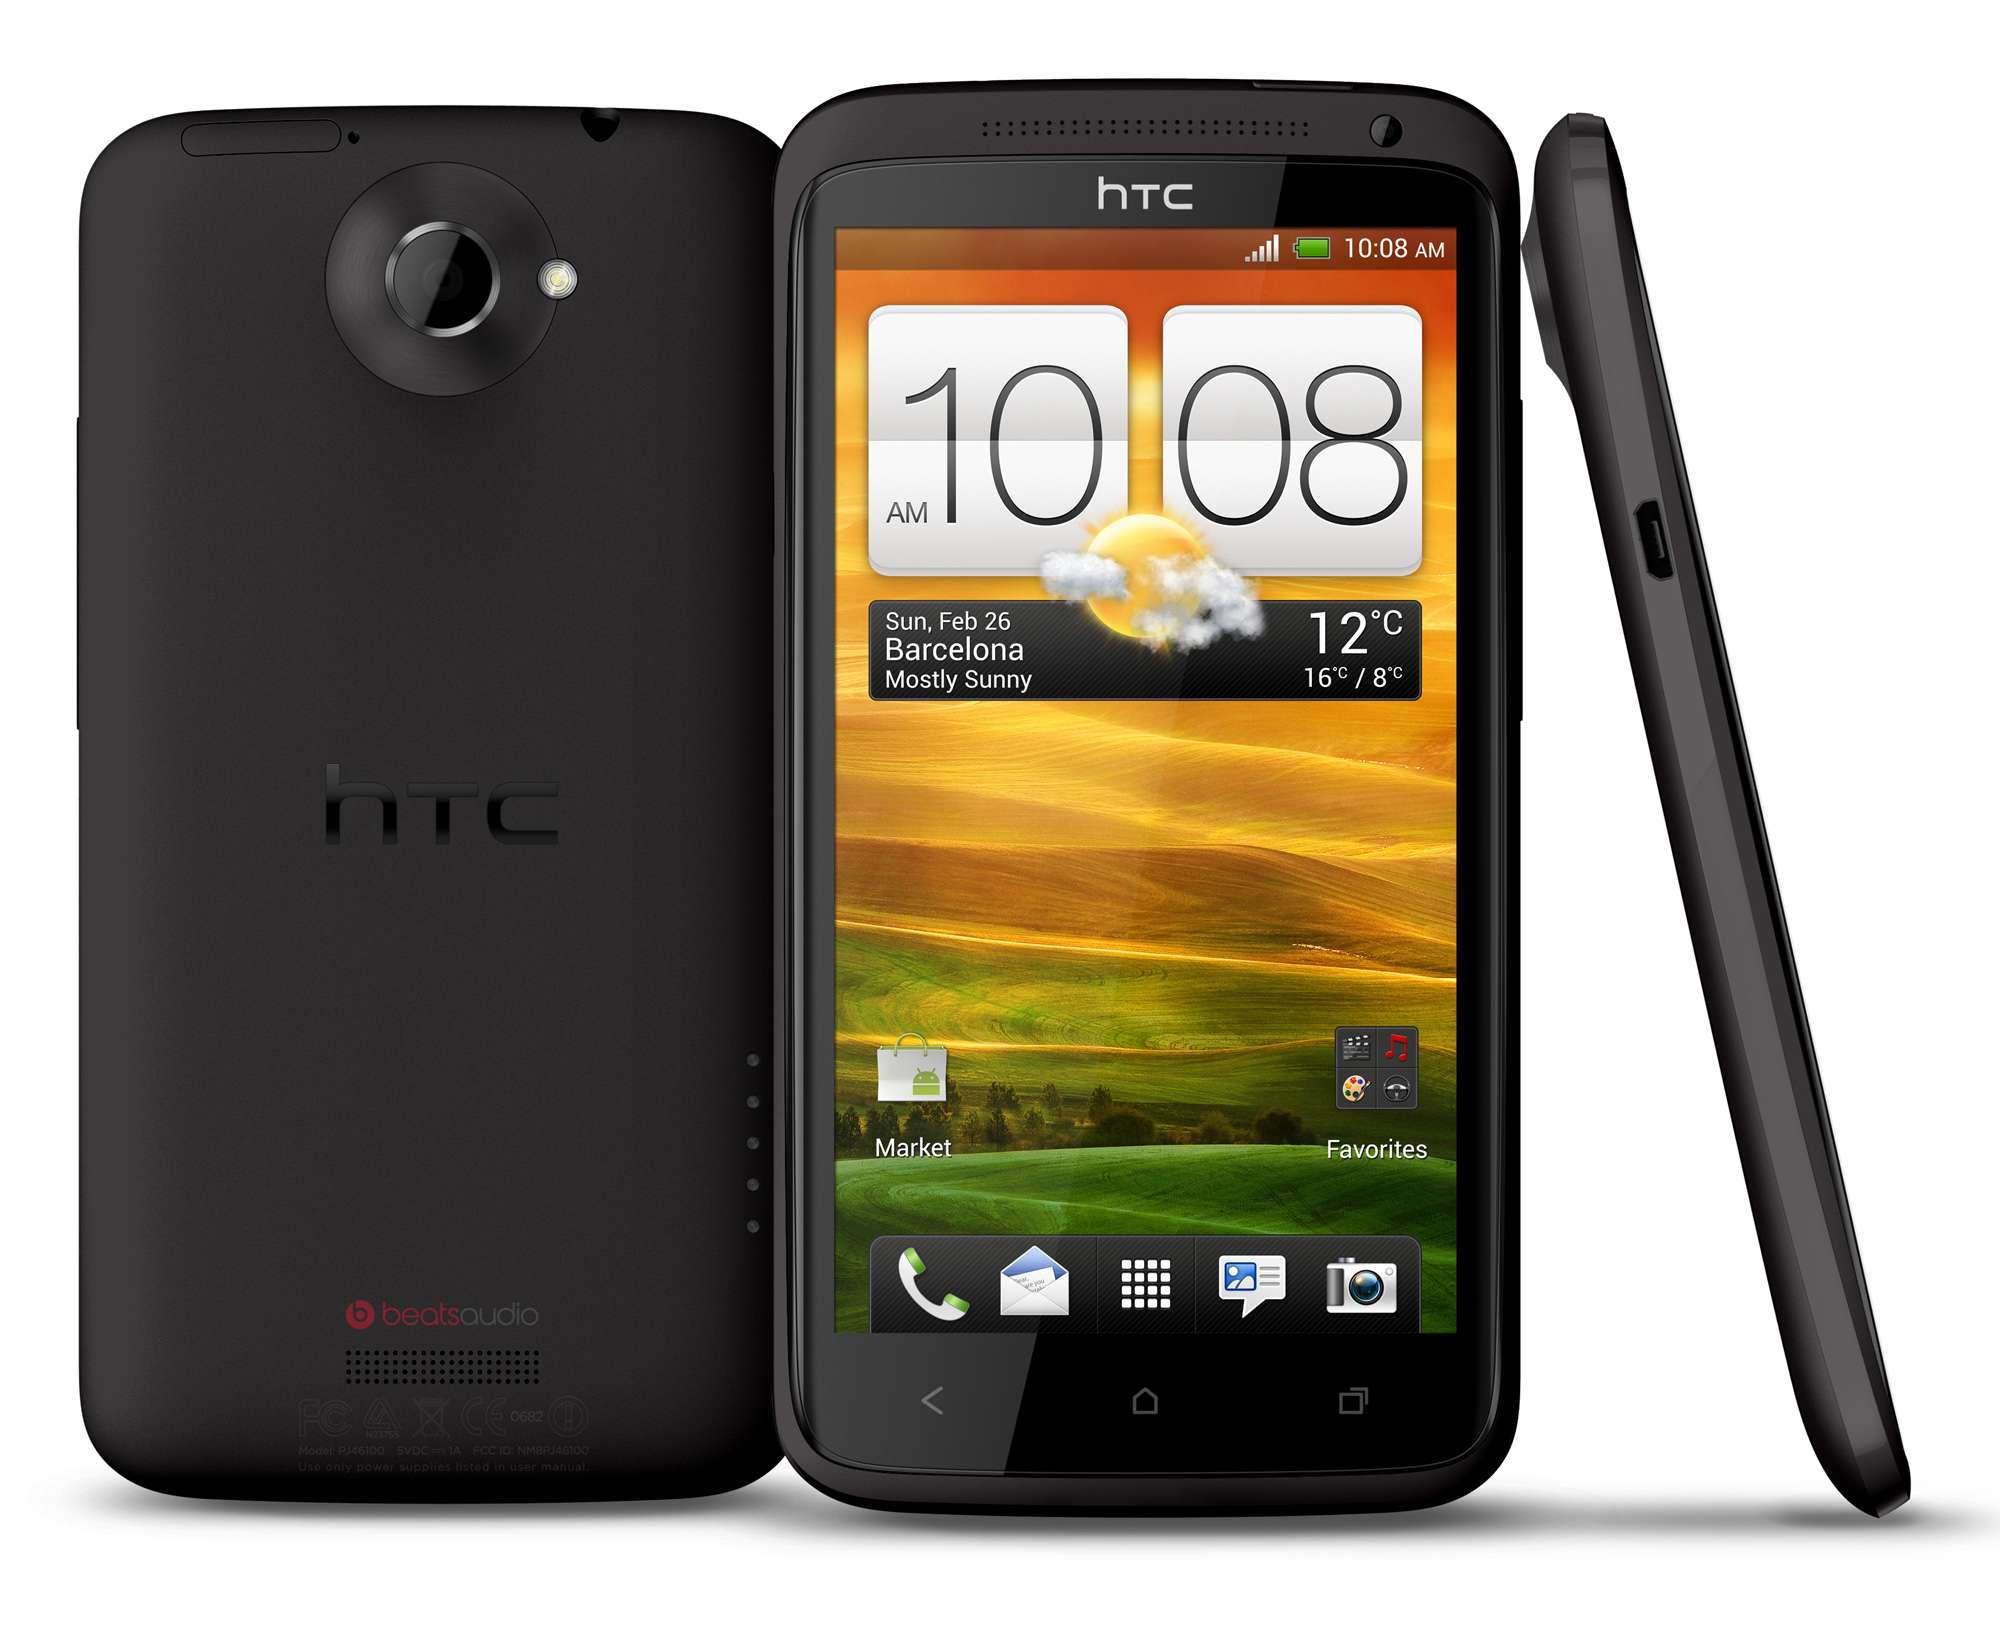  الروم الرسمي لجهاز HTC One X S720e  الاسم التطوير ENDEAVOR_TD | ENDEAVOR_U |